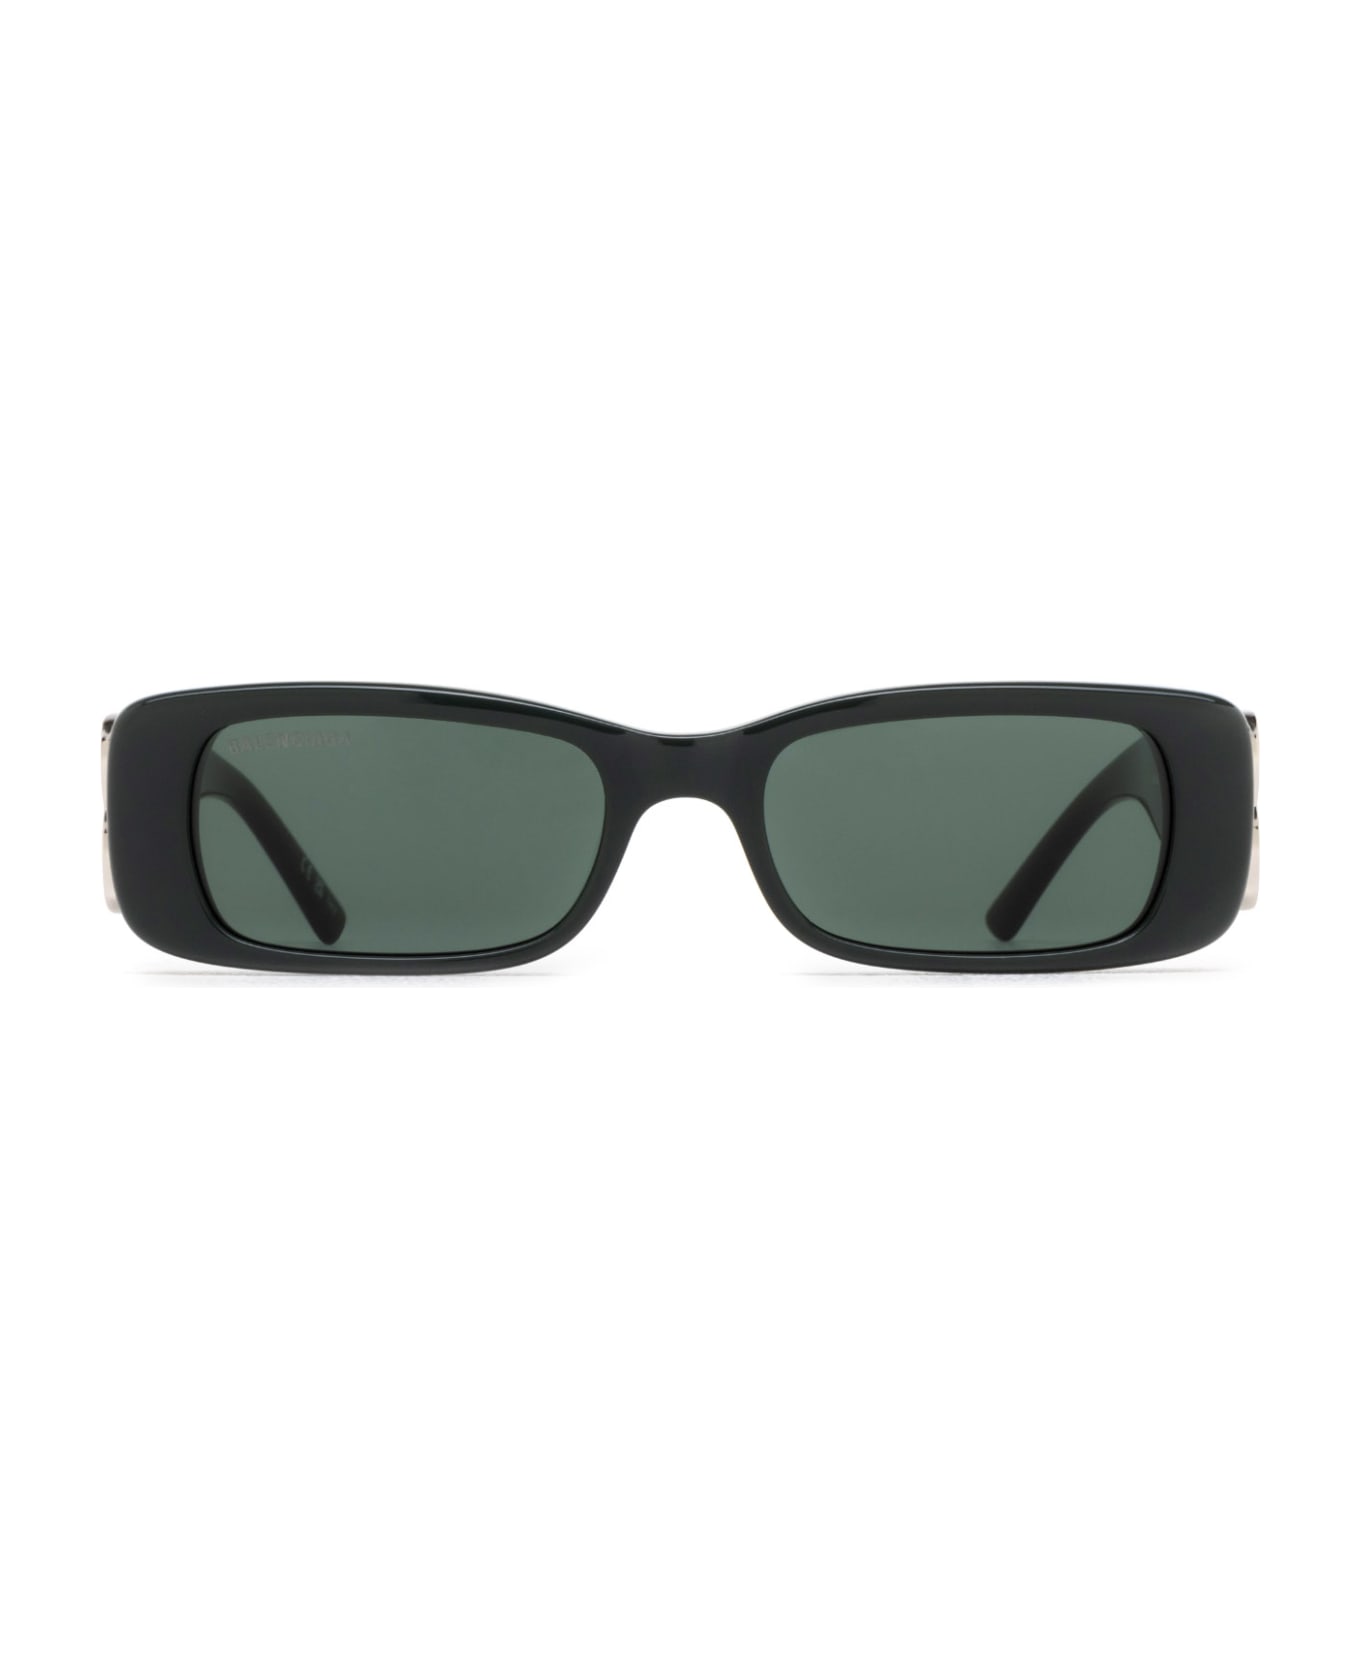 Balenciaga Eyewear Bb0096s Sunglasses - Green